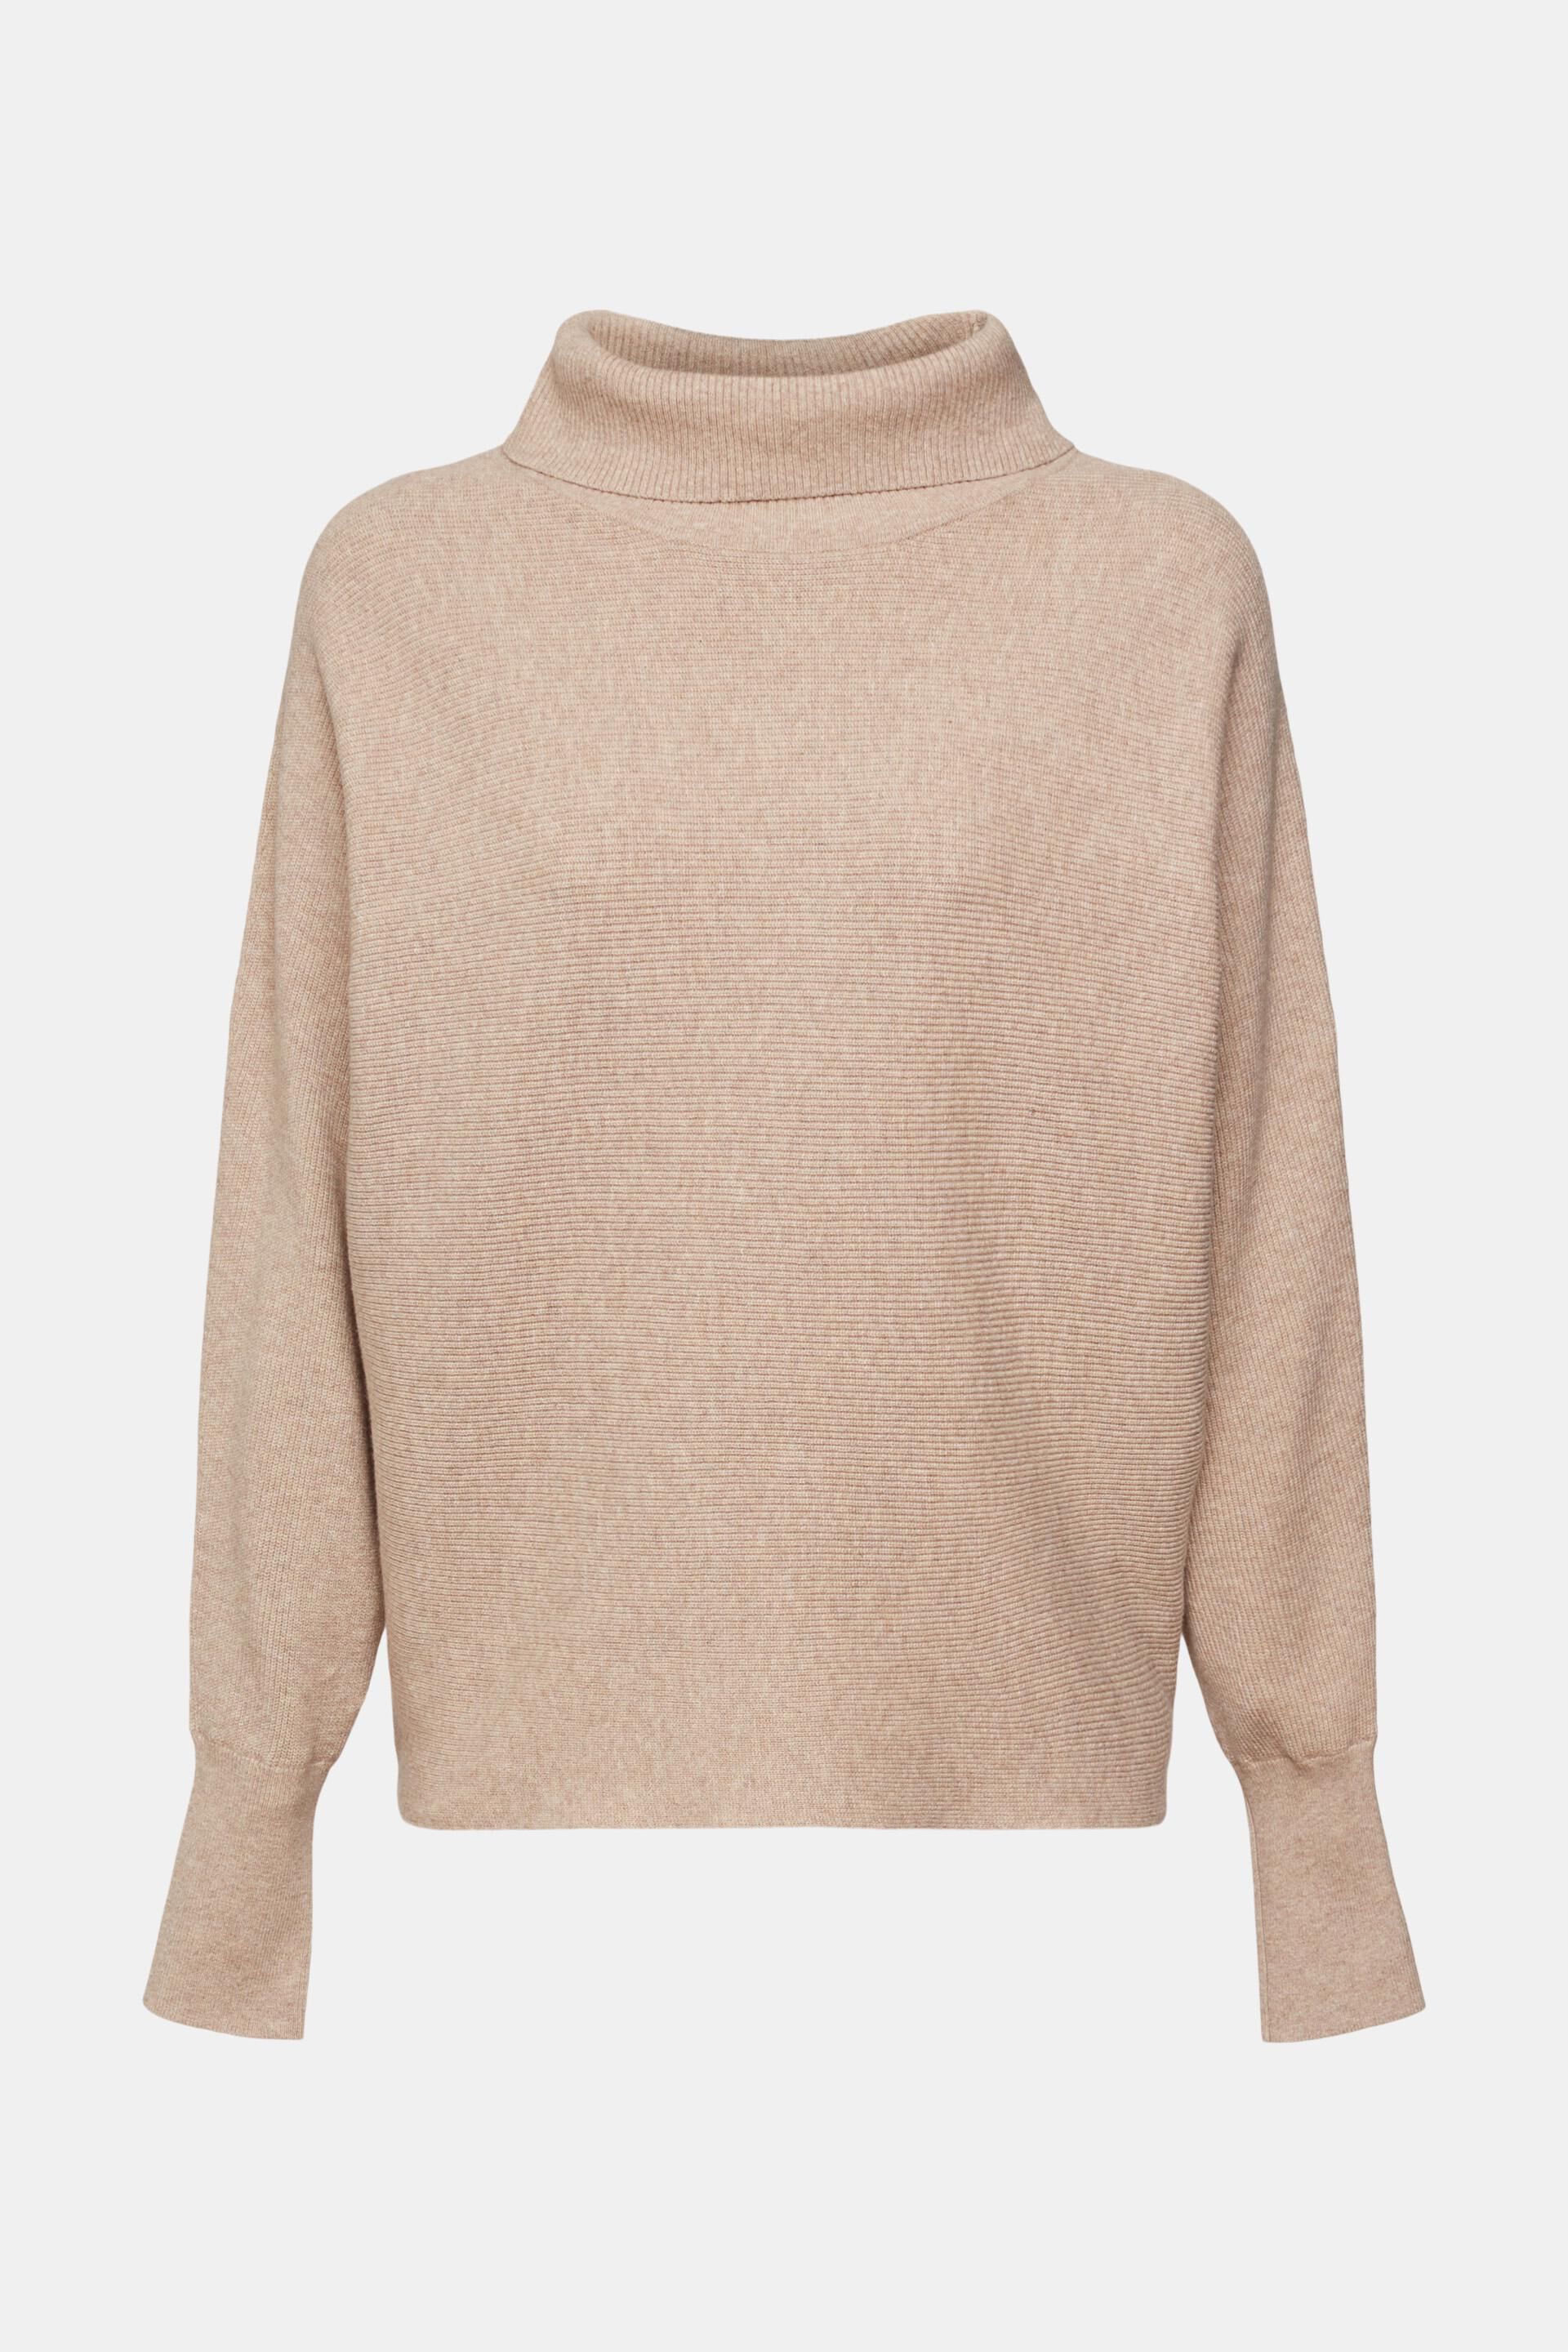 Moda Swetry Swetry z dekoltem w kształcie litery V Esprit Sweter z dekoltem w kszta\u0142cie litery V Wz\u00f3r w kratk\u0119 